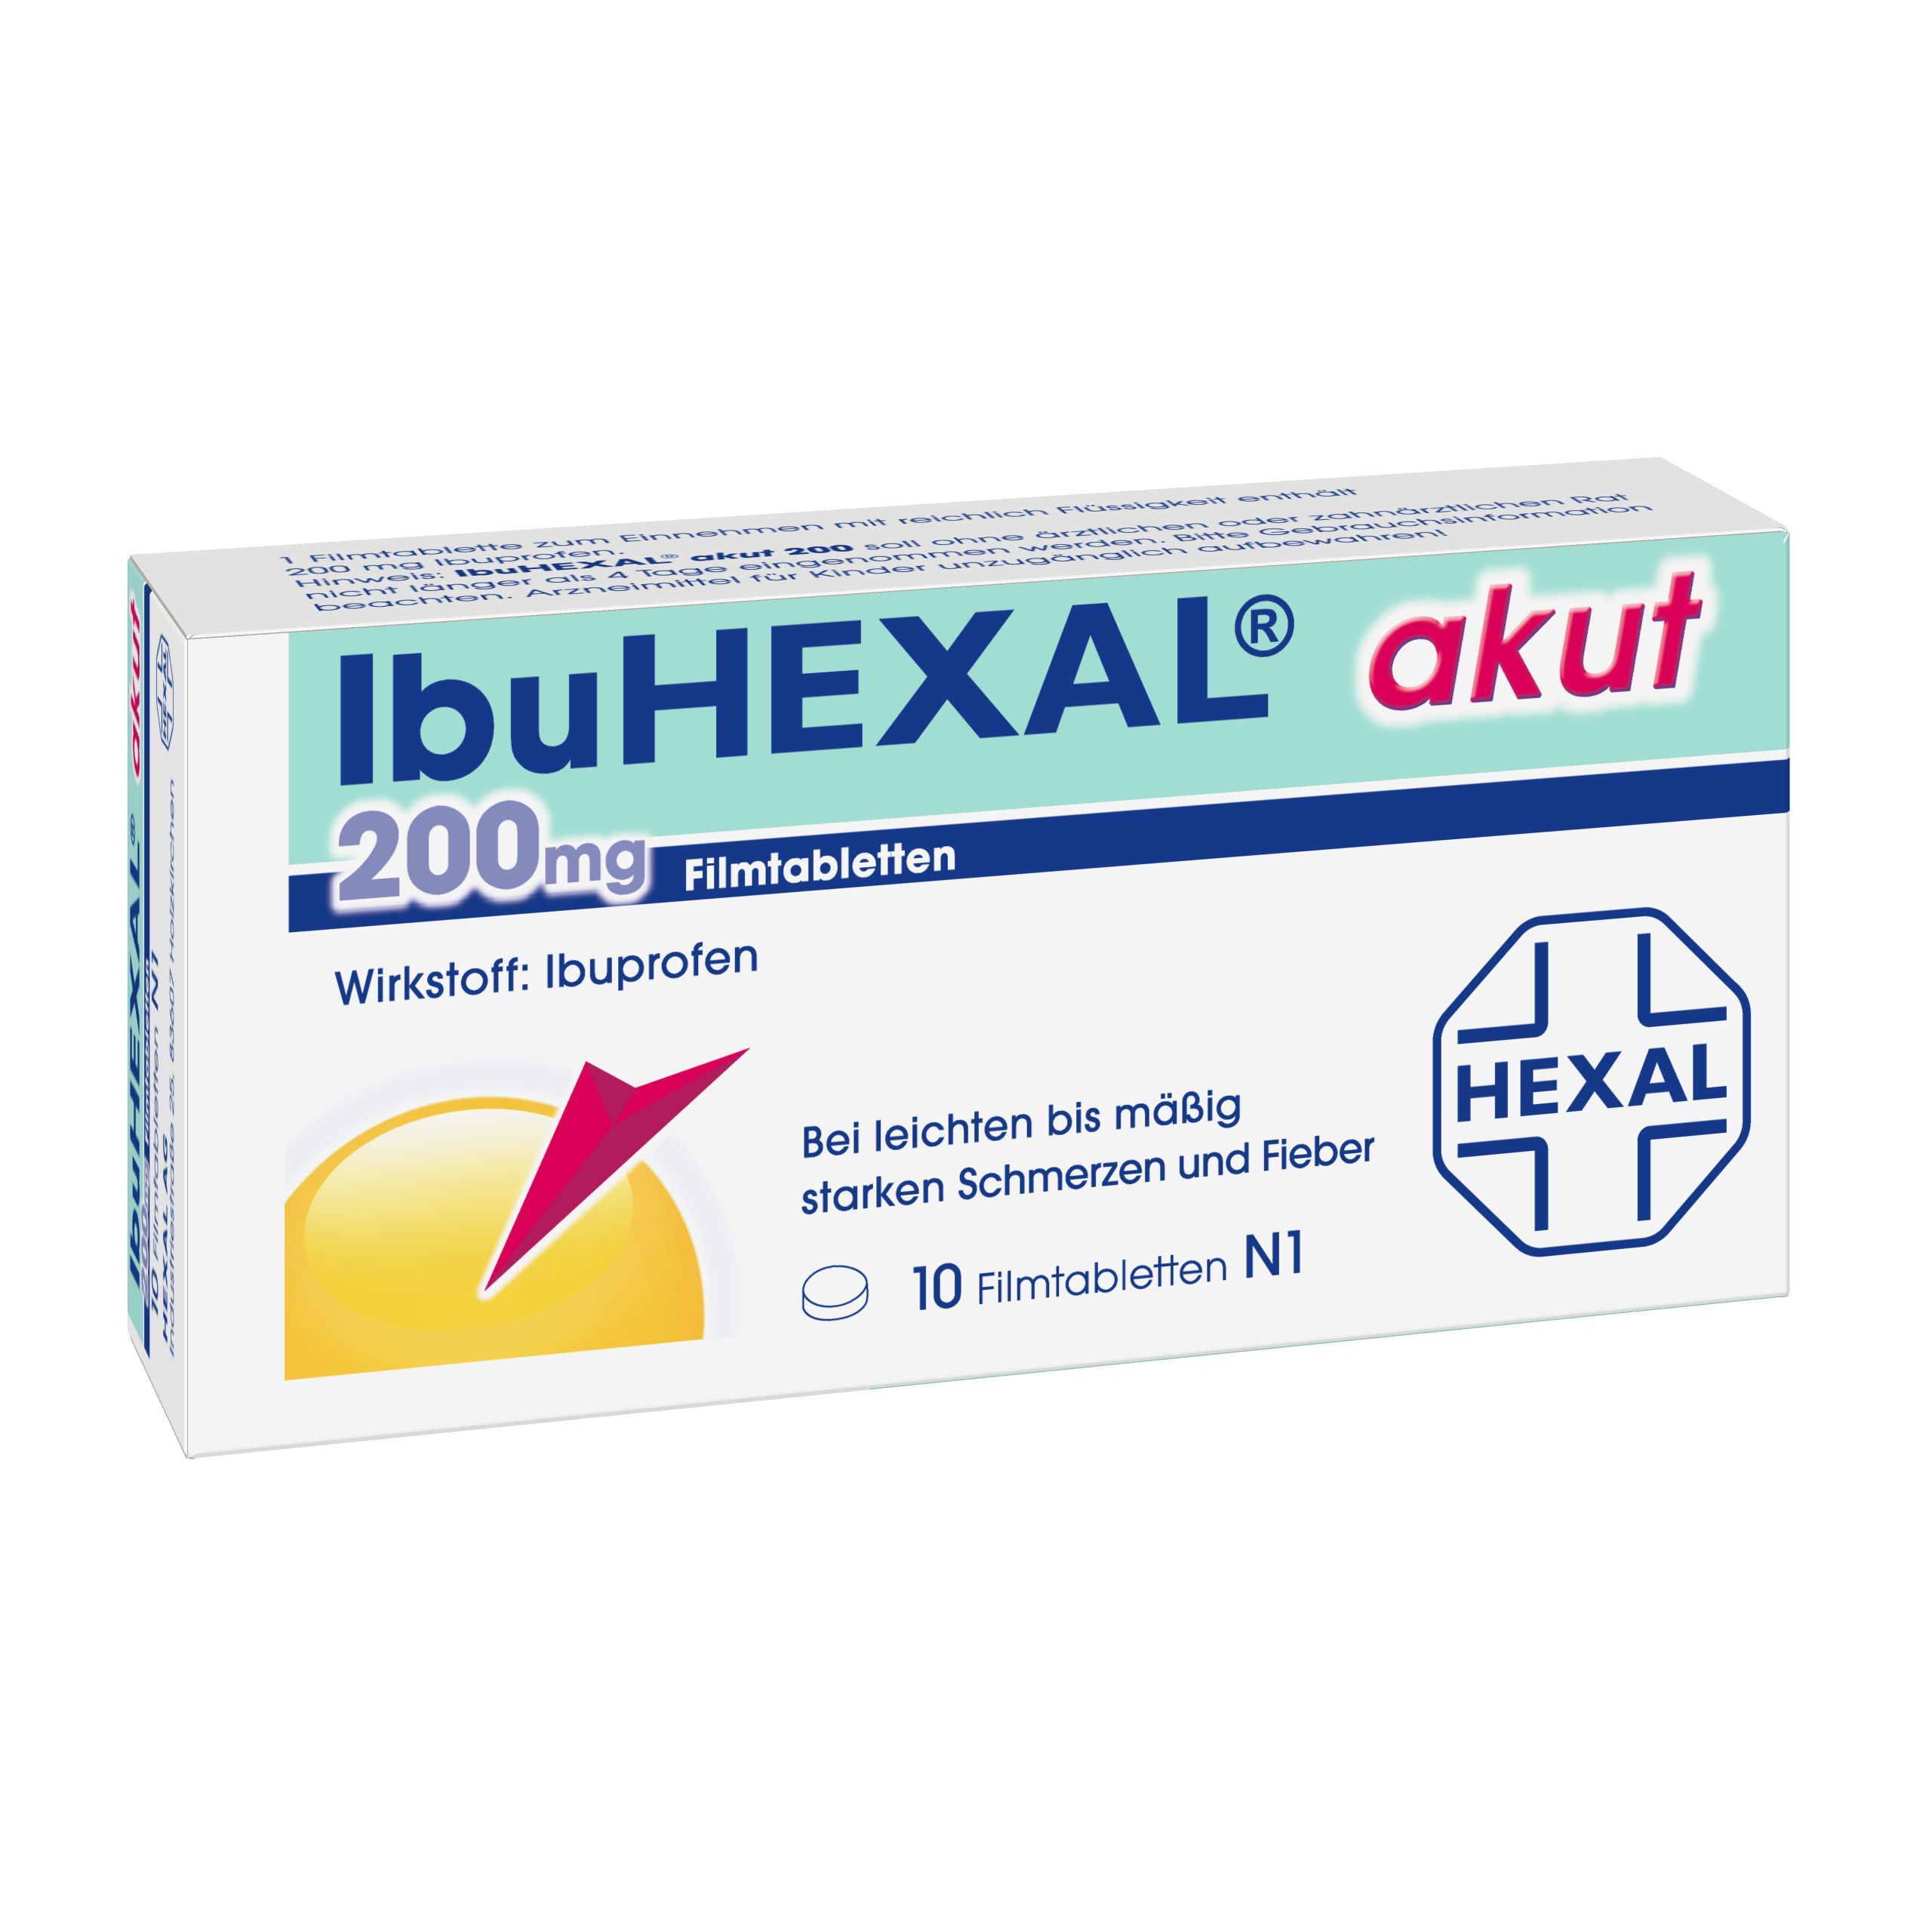 IbuHEXAL® akut 200 mg